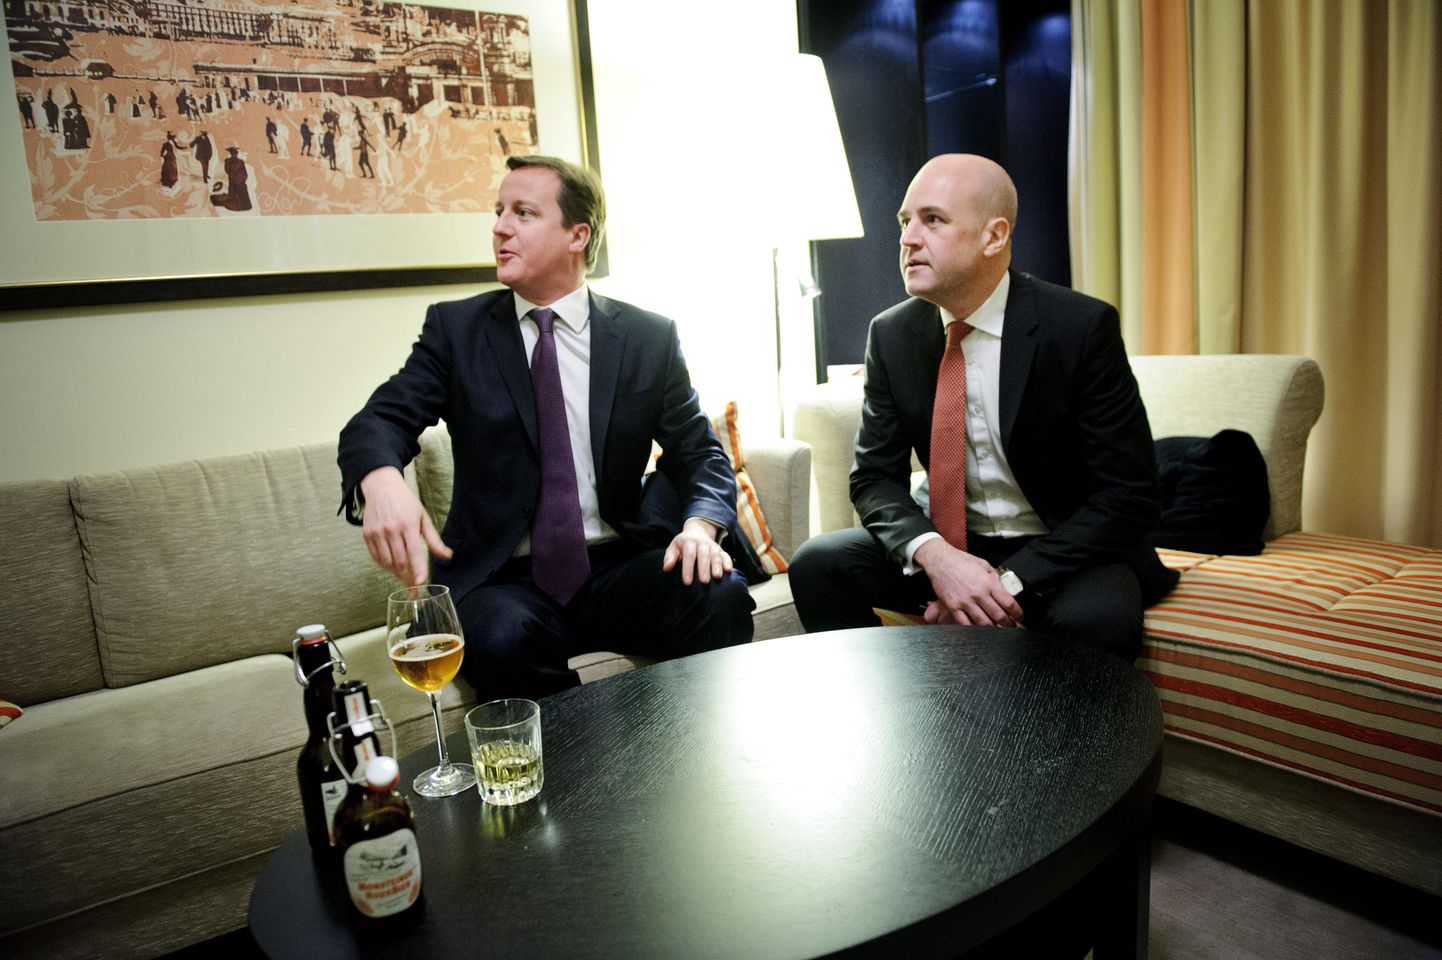 DAVOS  2013-01-24
Britains Prime Minister David Cameron and Swedes Prime Minister Fredrik Reinfeldt met for a beer and an EU talk in the hotel room of the British P.M.  in Davos, Switzerland, January 24, 2013. 
Foto:Jens L'Estrade / XP / SCANPIX / kod 8000
** OUT SWEDEN OUT **